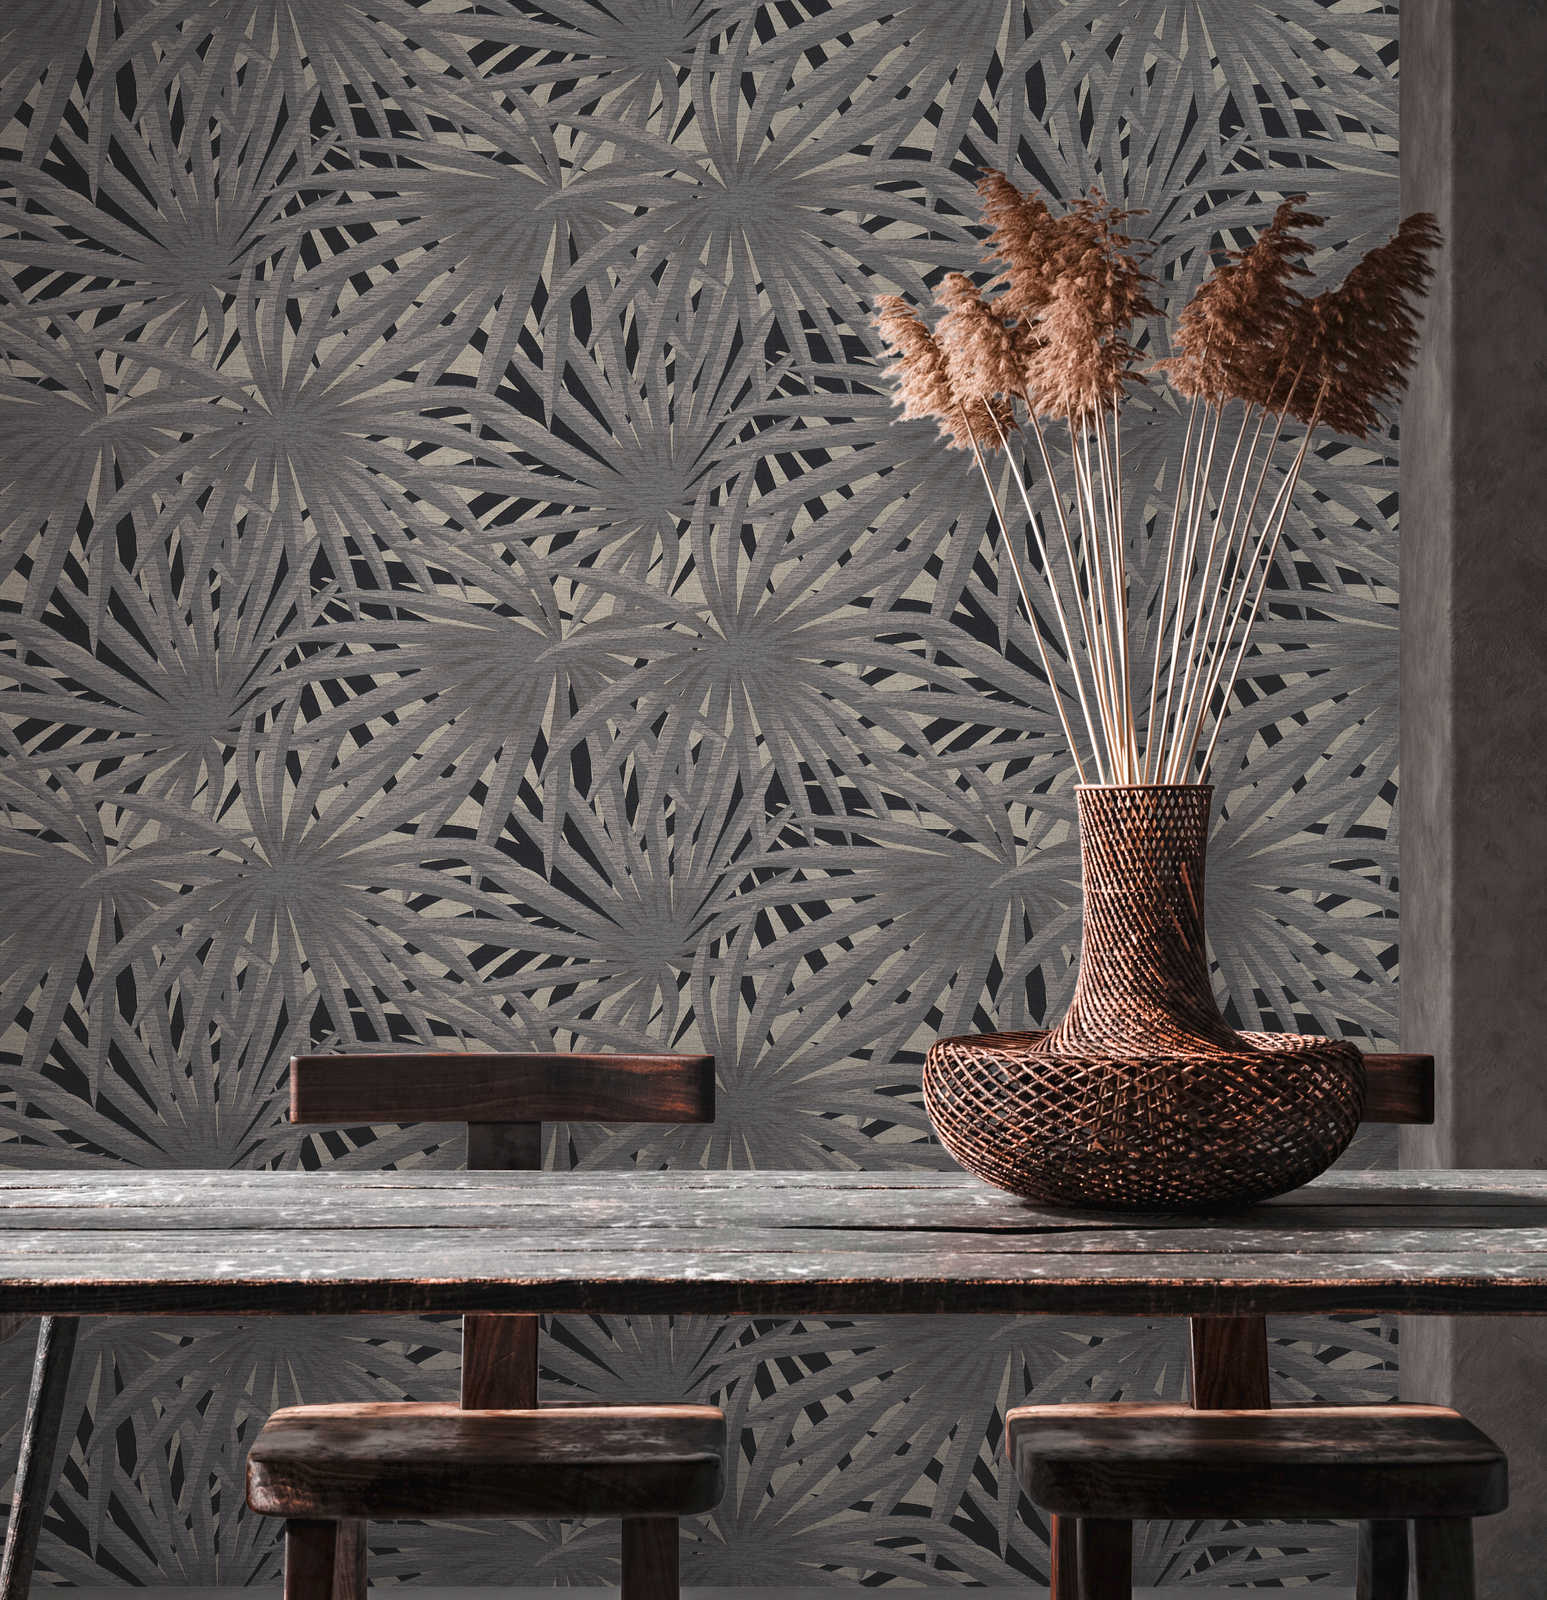             Vliesbehang jungle design met metallic effect - grijs, metallic, zwart
        